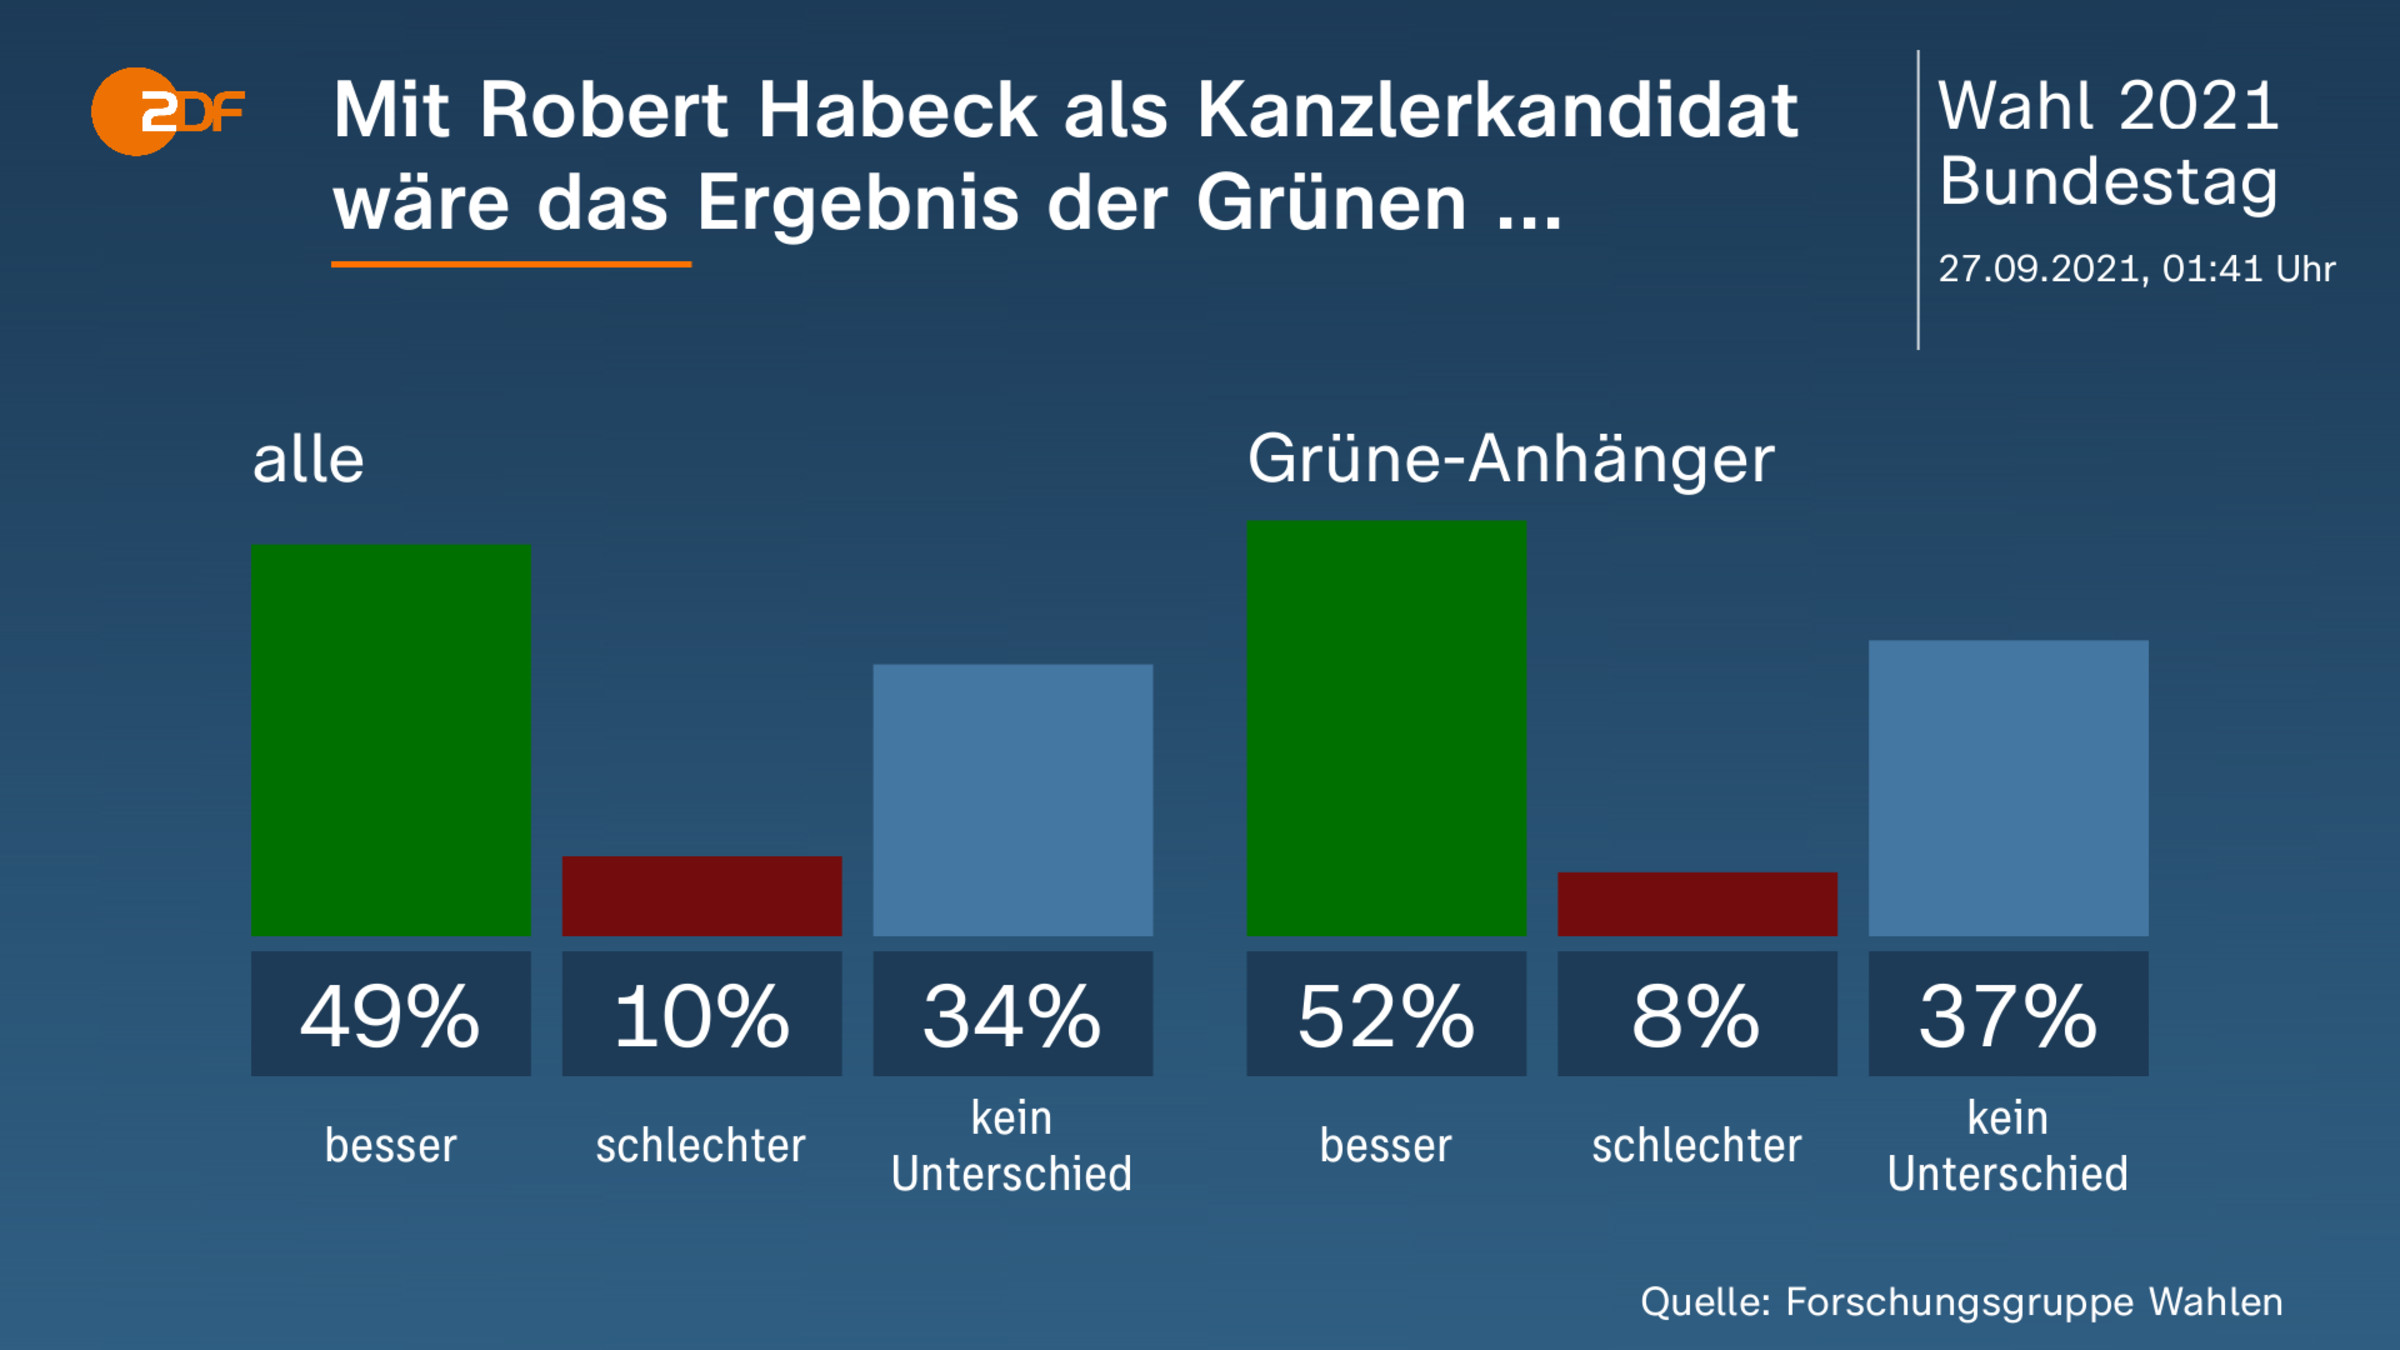 Mit Robert Habeck als Kanzlerkandidat wäre das Ergebnis der Grünen ... 